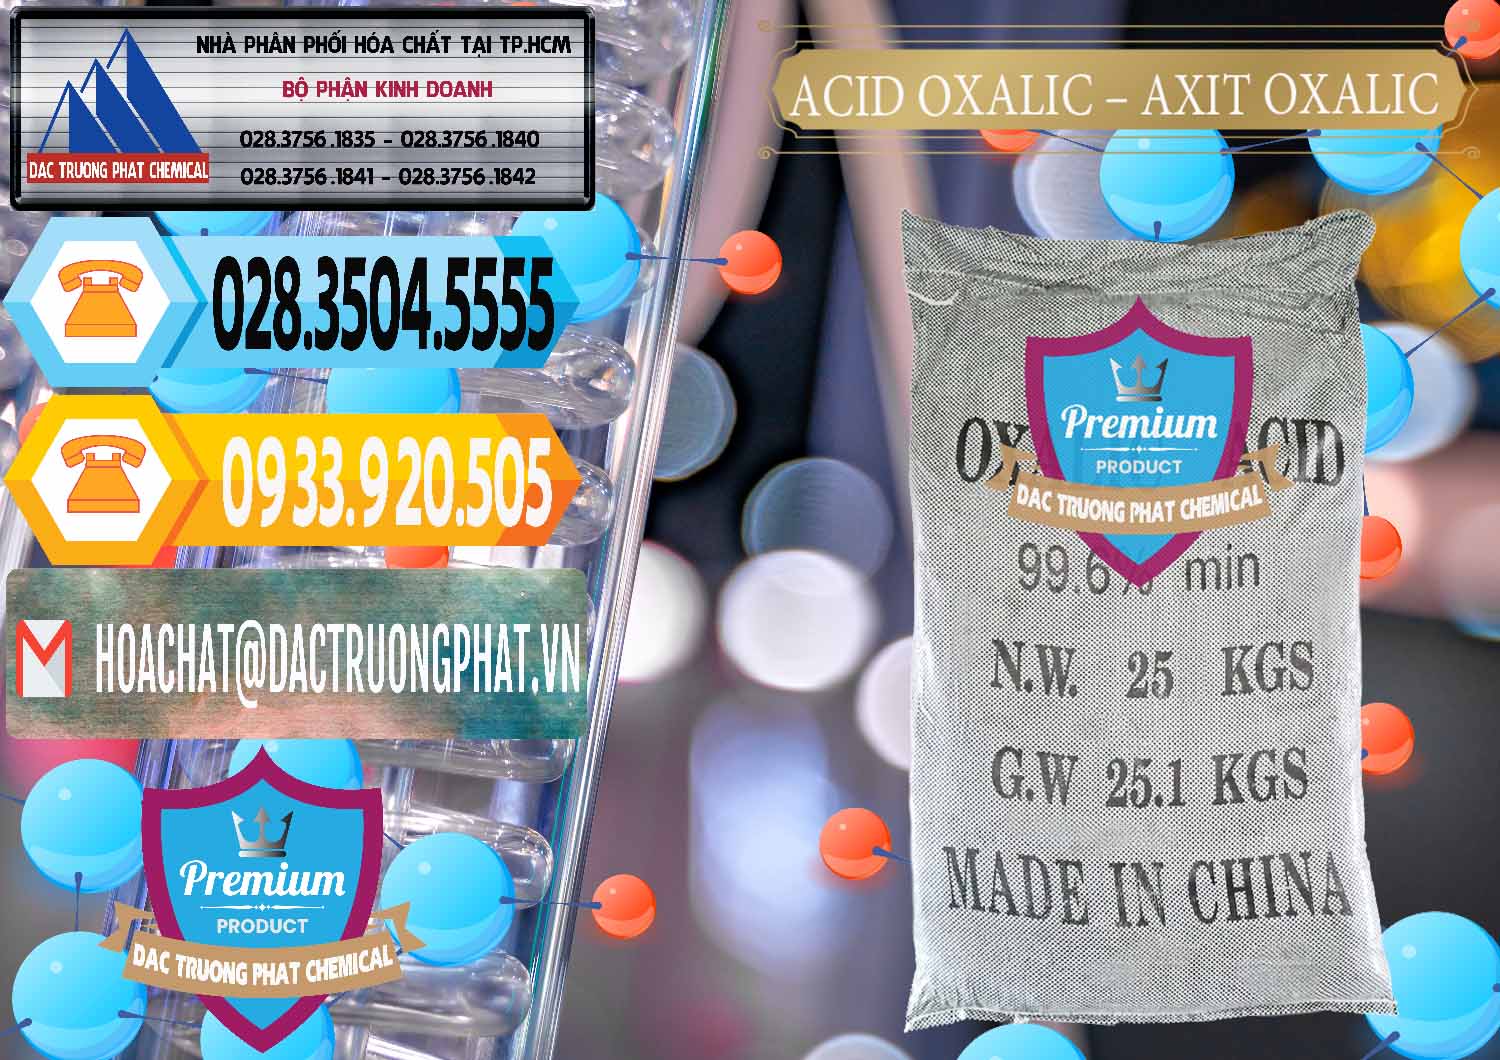 Công ty bán _ phân phối Acid Oxalic – Axit Oxalic 99.6% Trung Quốc China - 0014 - Đơn vị nhập khẩu - cung cấp hóa chất tại TP.HCM - hoachattayrua.net